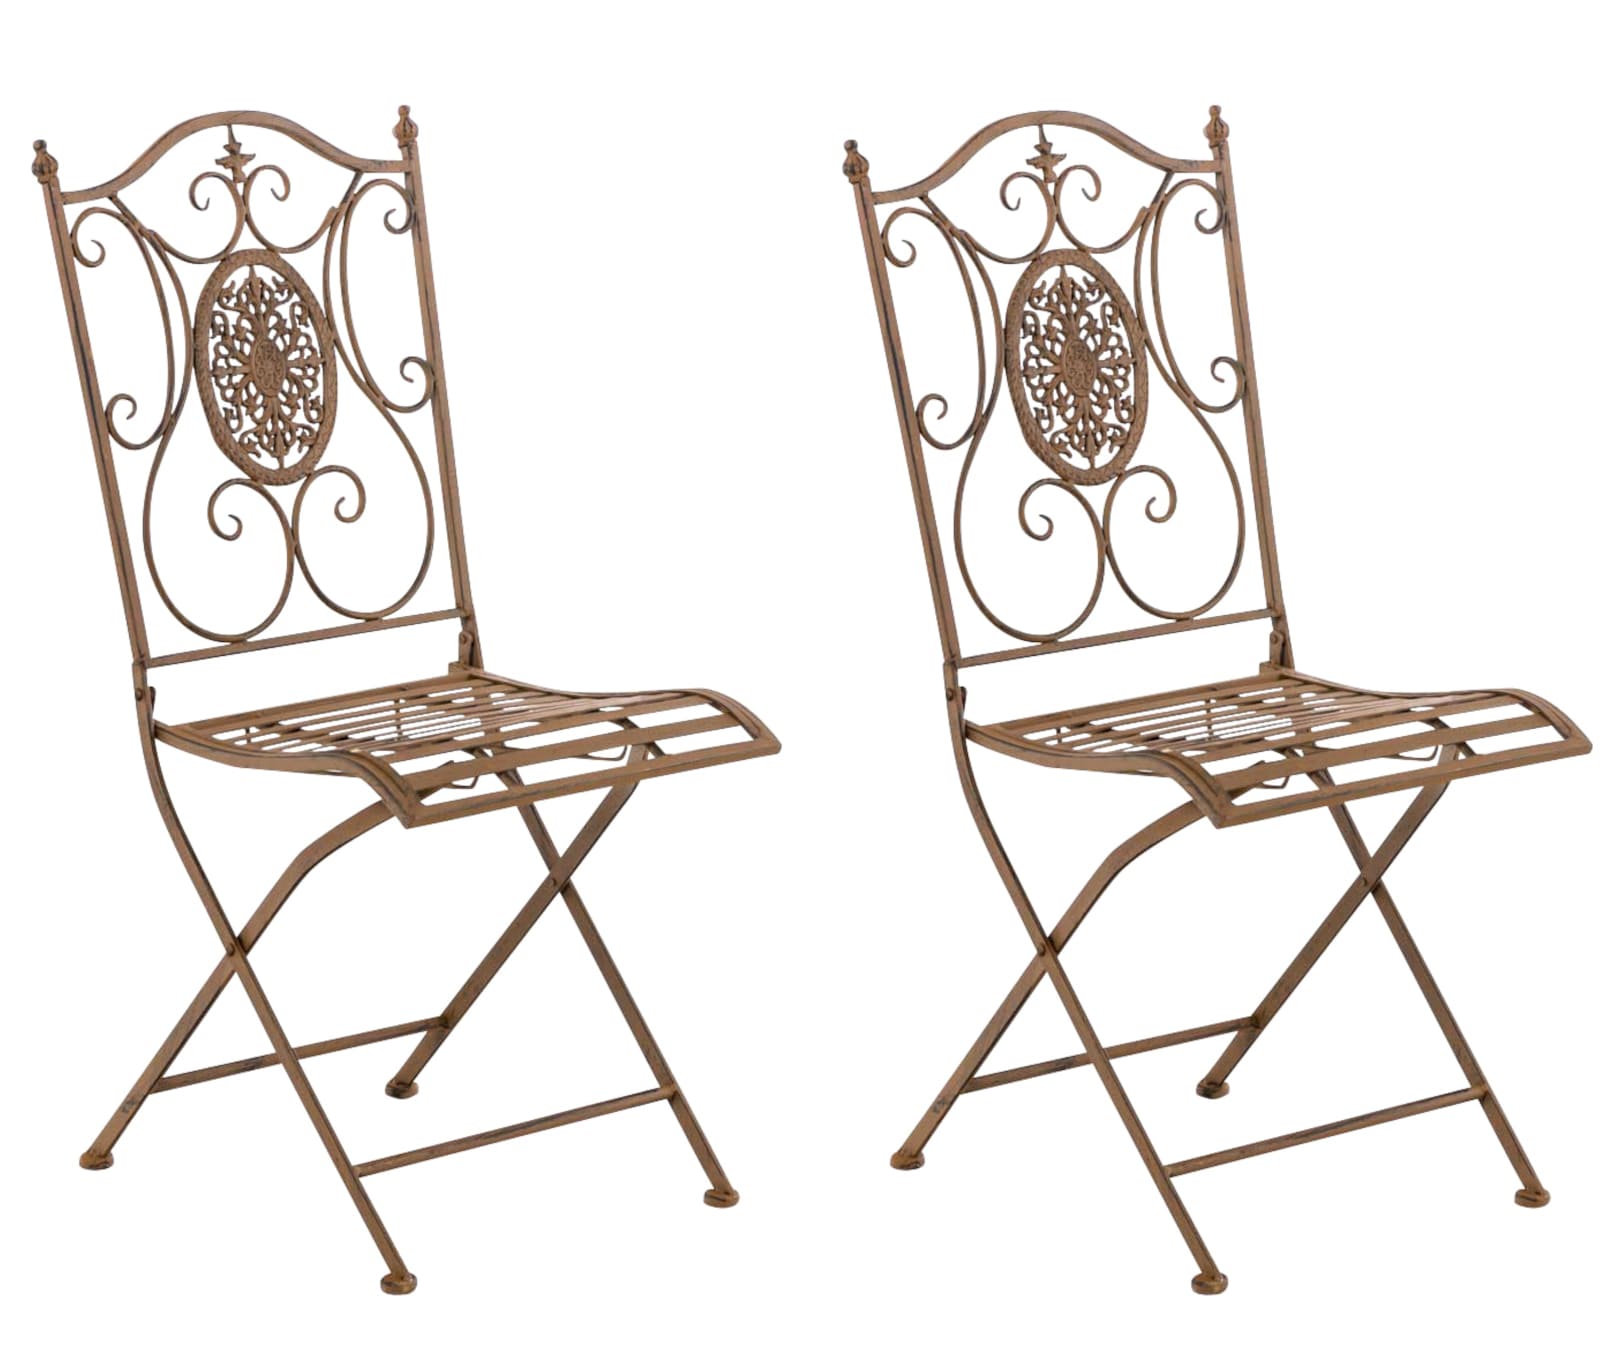 lot de 2 chaises de jardin pliables en métal marron antique